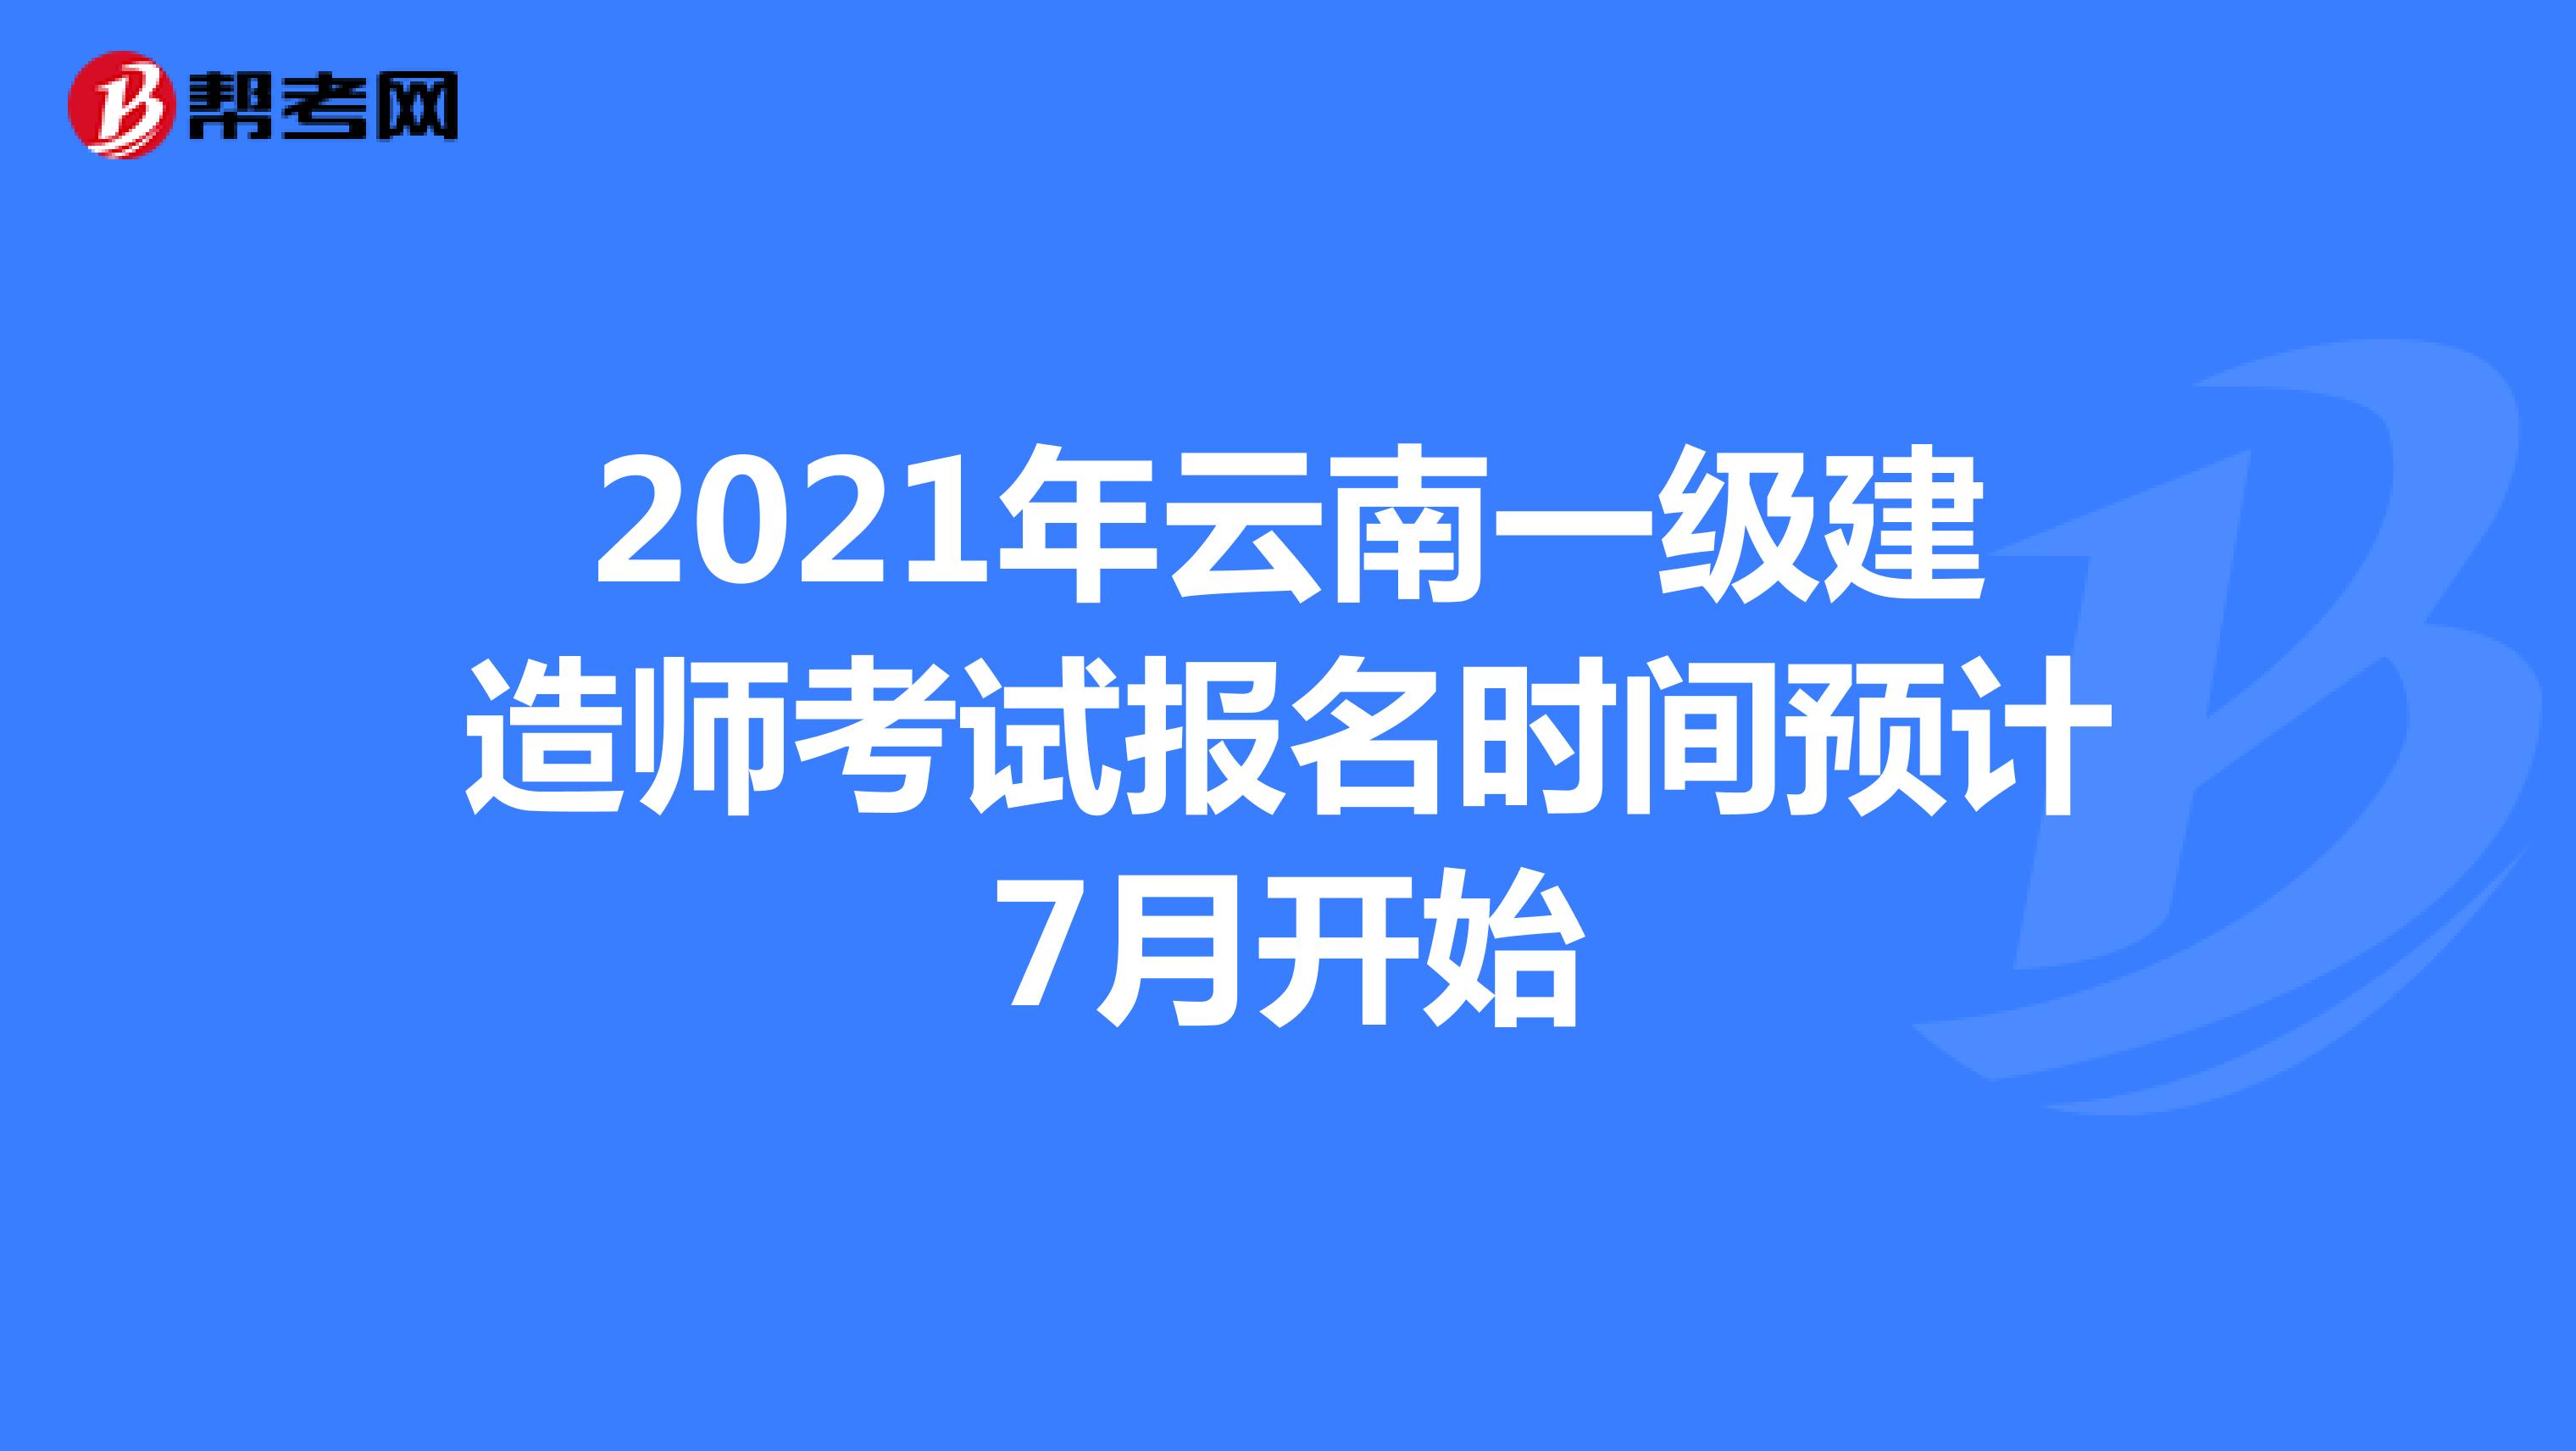 2021年云南一级建造师考试报名时间预计7月开始